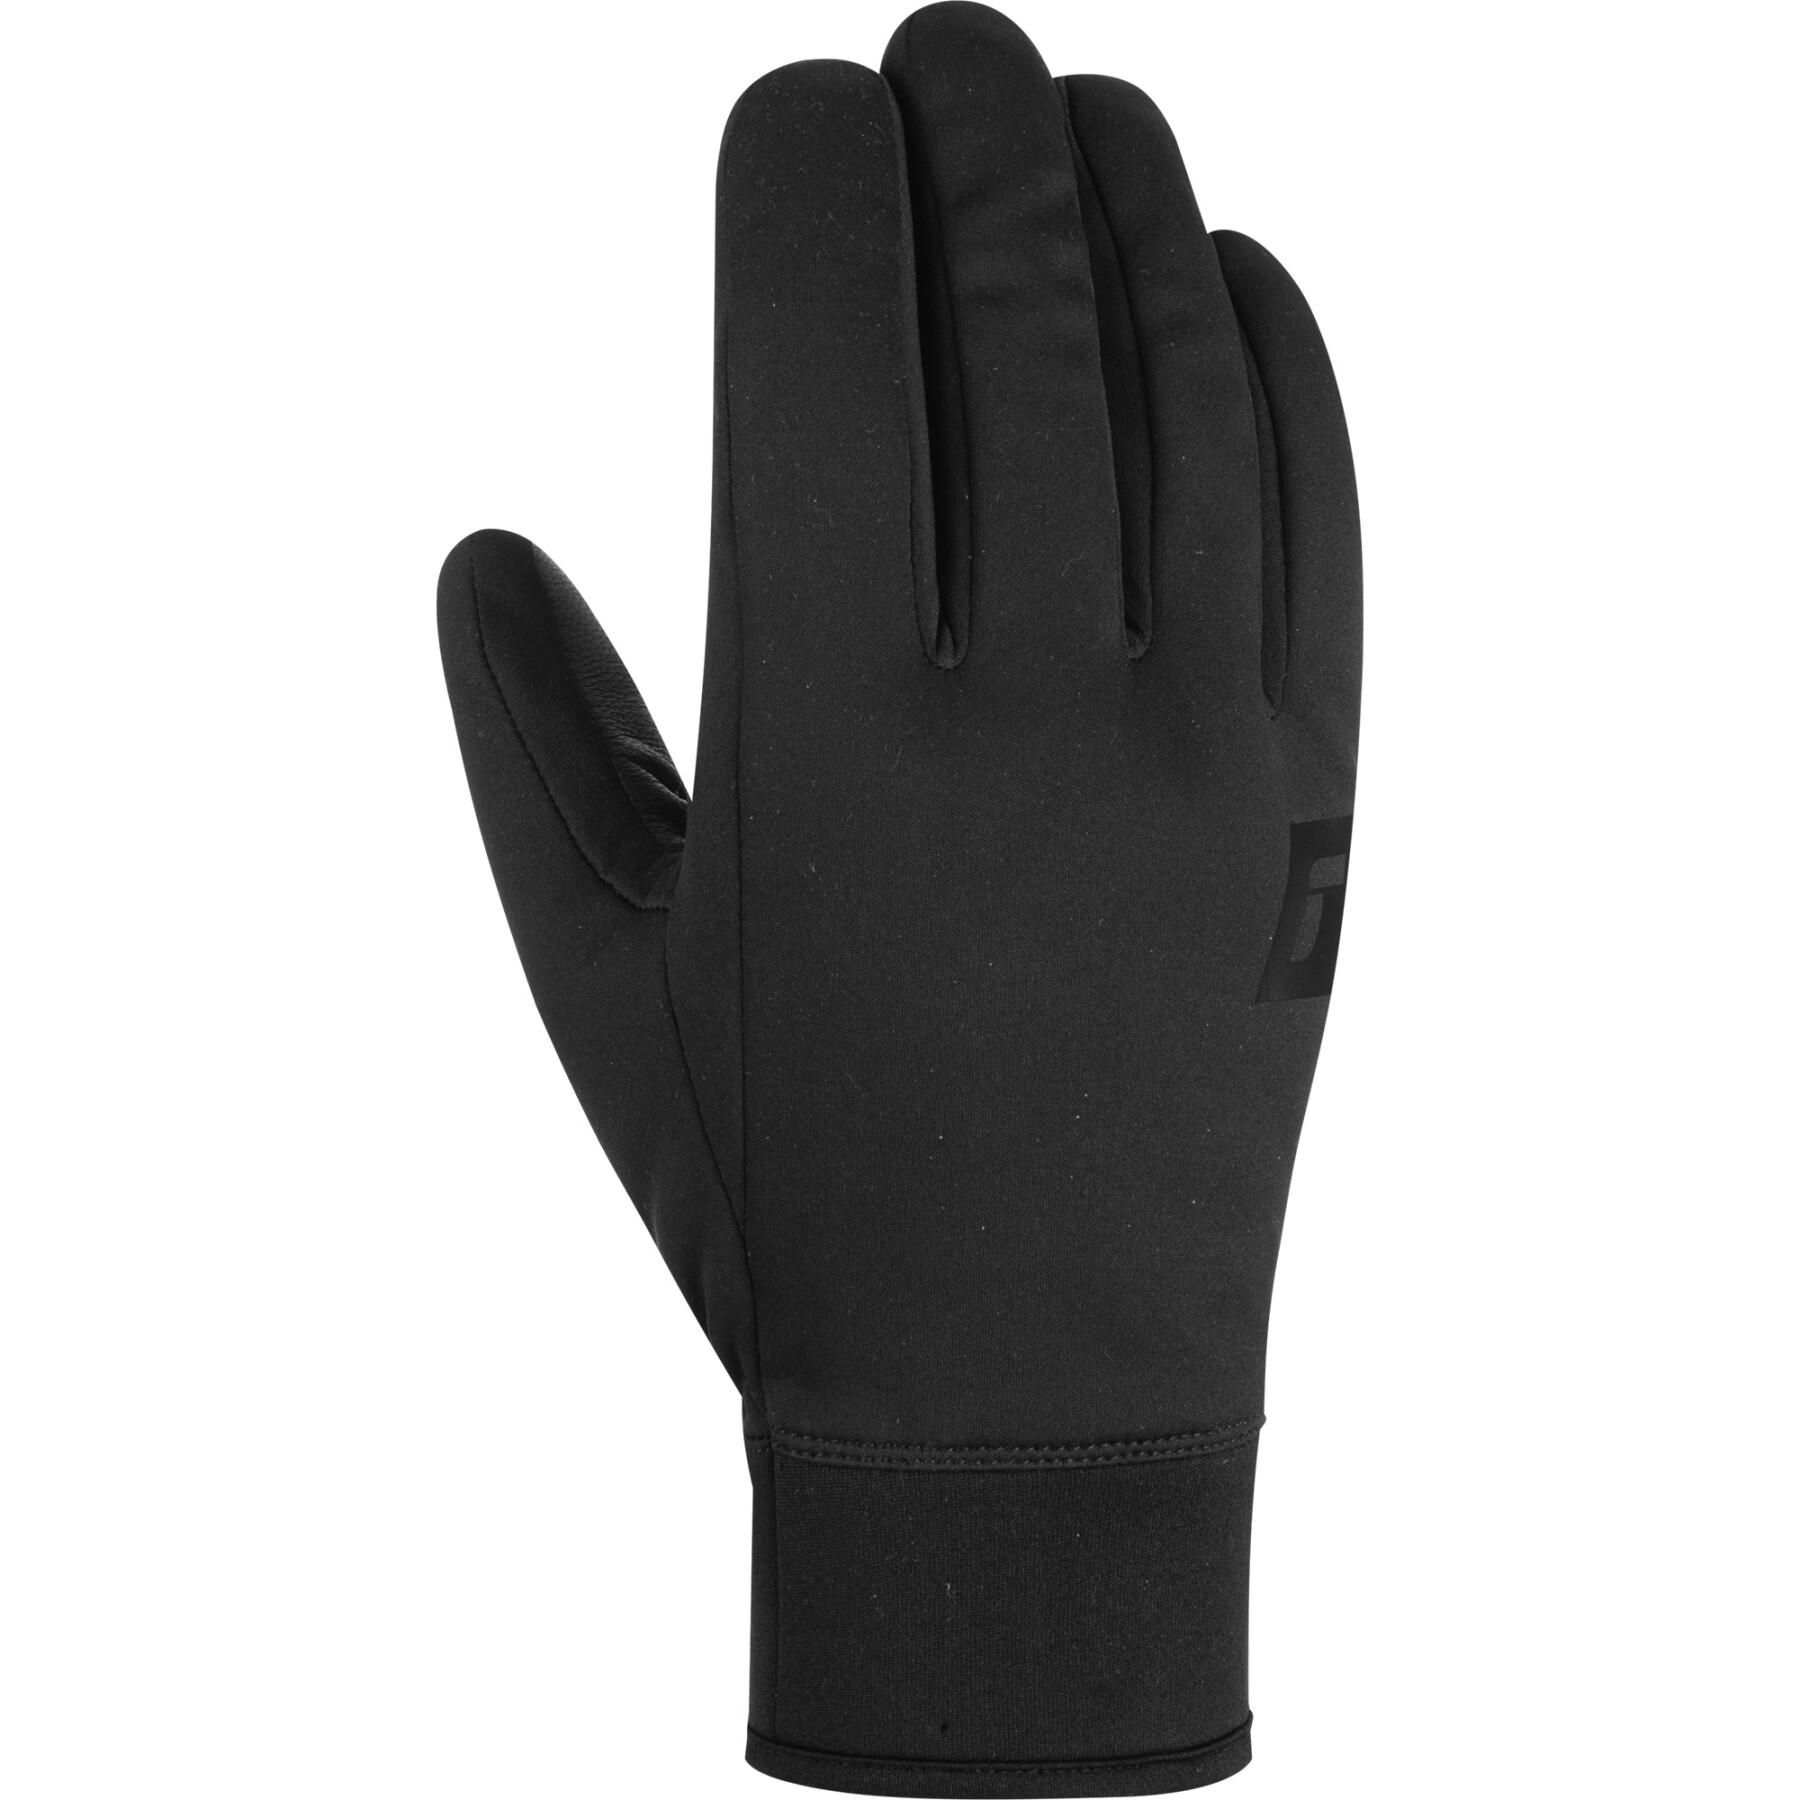 Ski gloves Reusch Purist Touch-Tec - Gloves - Accessories - Winter Sports